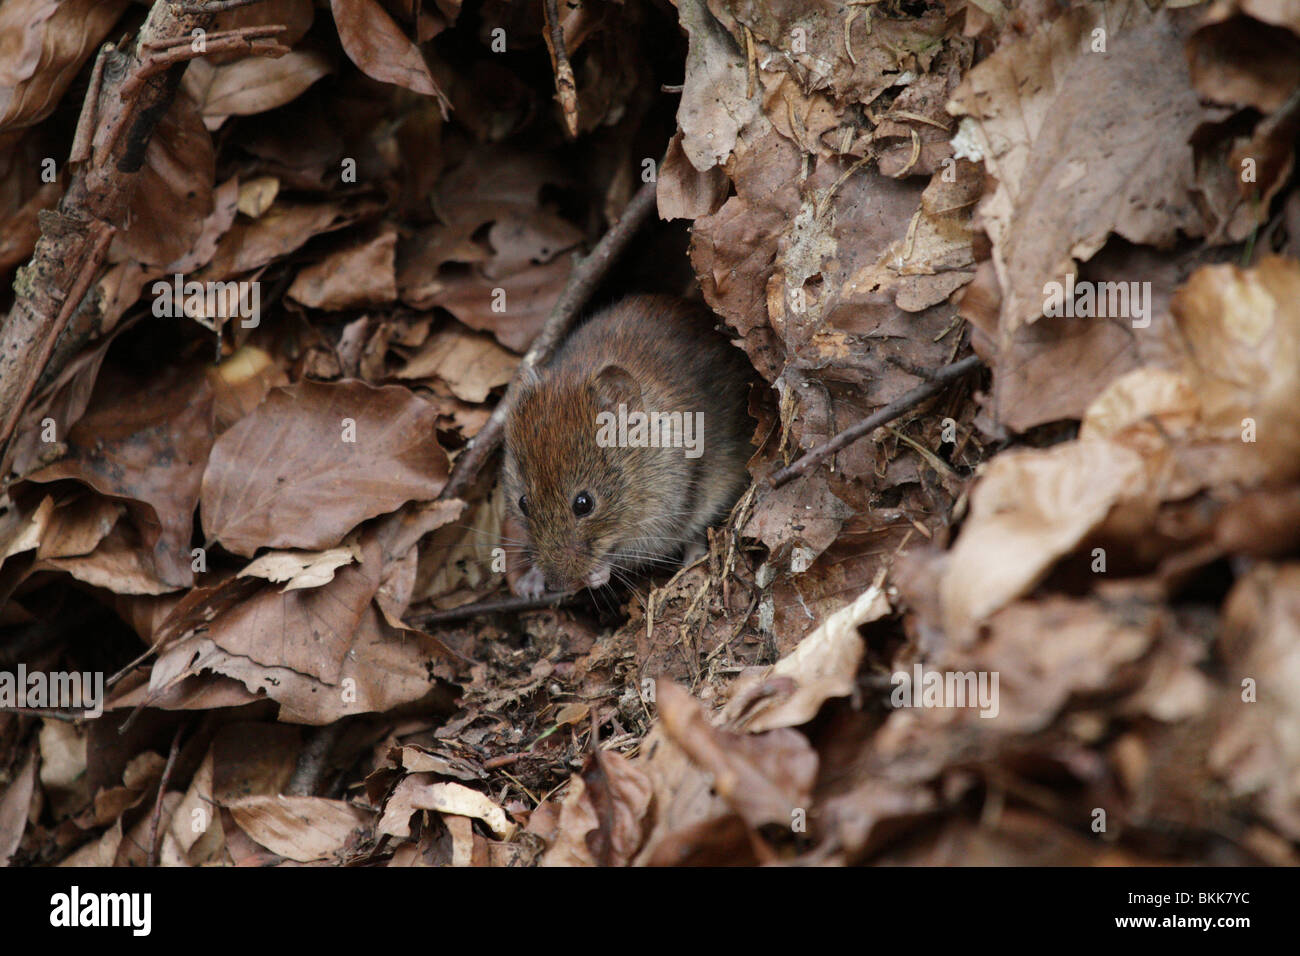 Bank vole mouse (Myodes glareolus) nel suo habitat naturale. Essi sono (abbastanza carino) vettori per i virus Hanta. Foto Stock